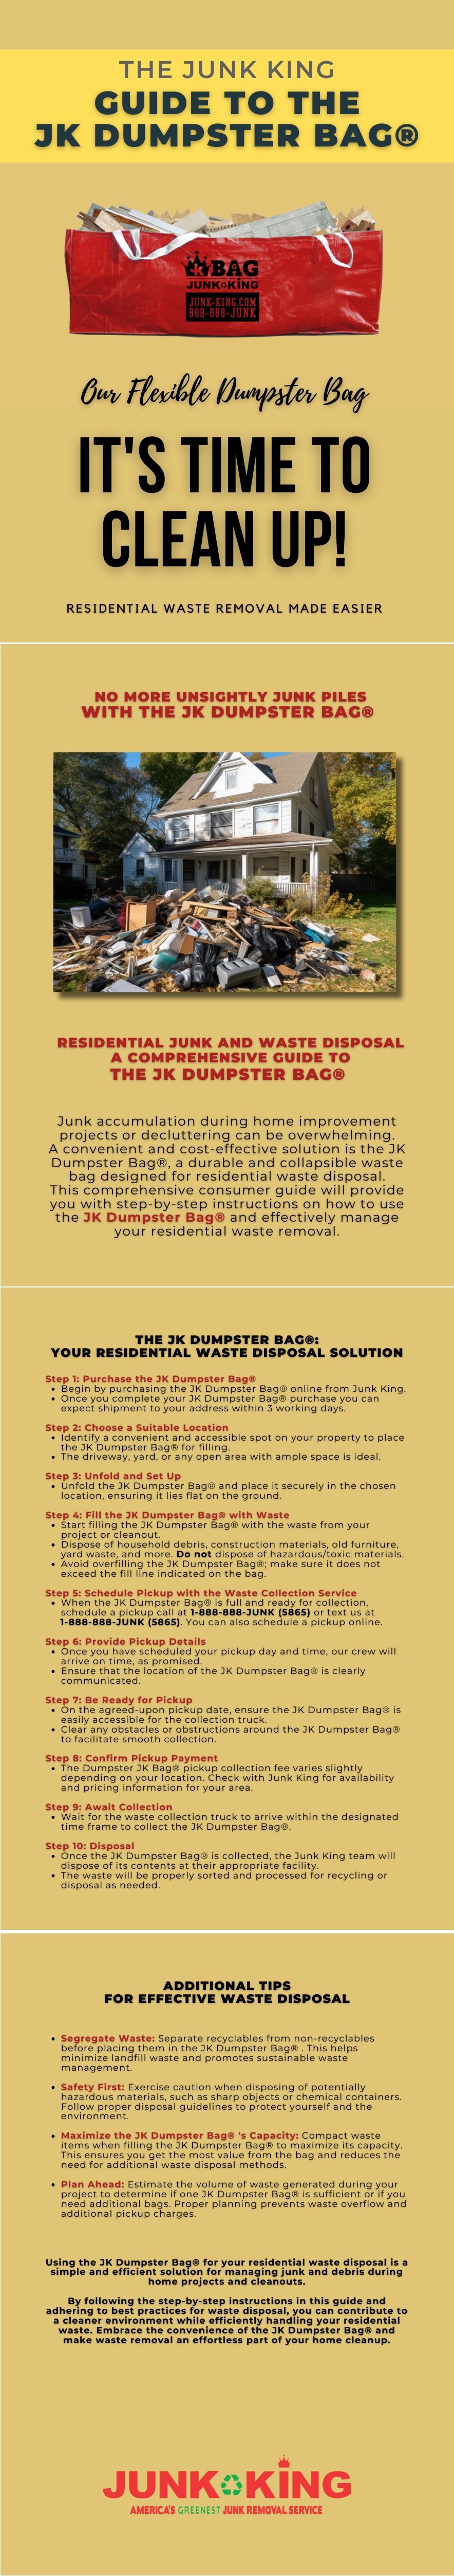 JK-Dumpster-Bag.Guide